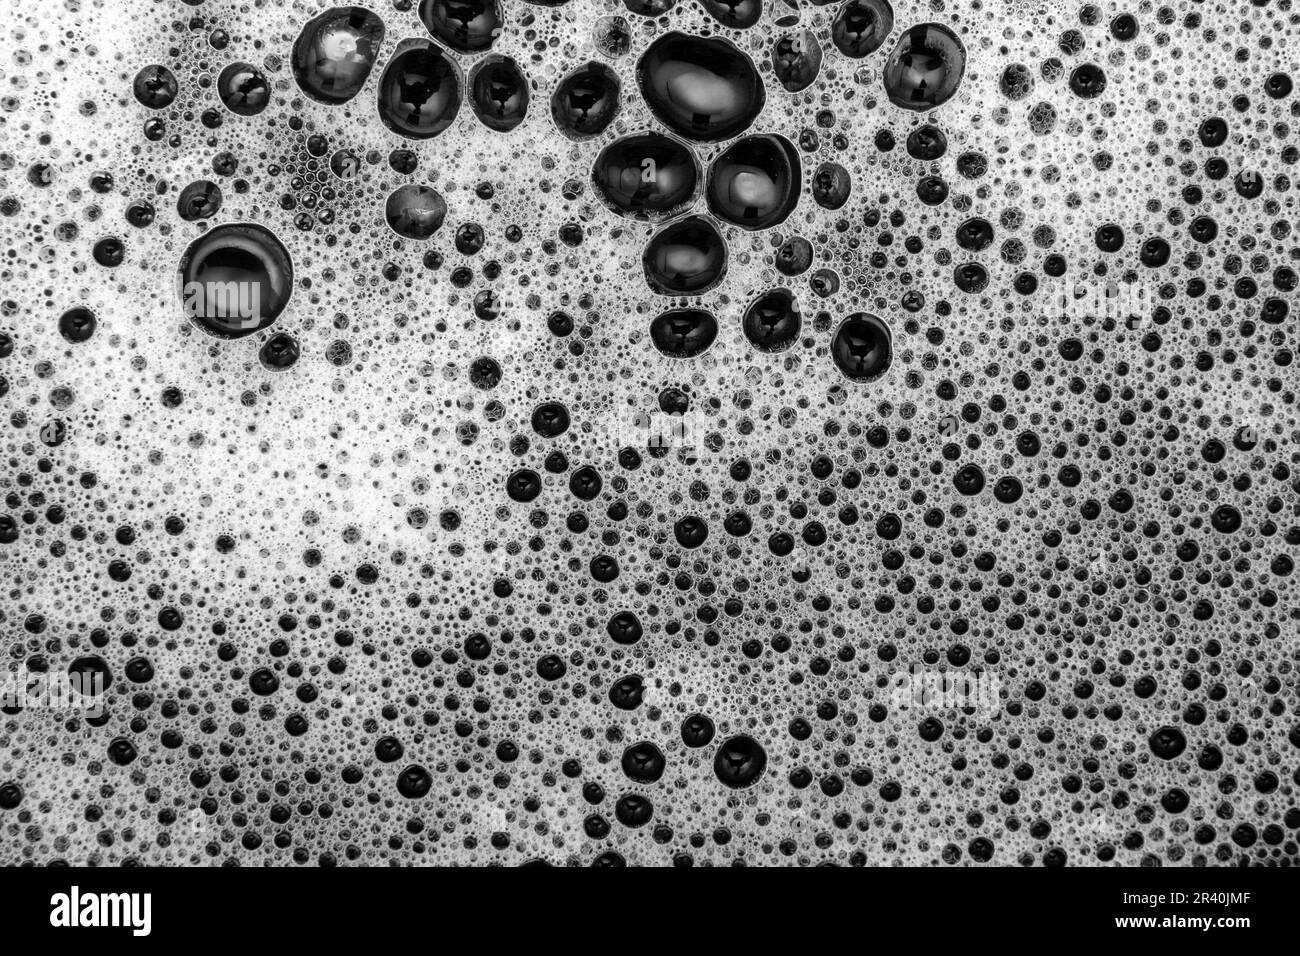 Goiânia, Goias, Brasile – 22 maggio 2023: Dettaglio della struttura in schiuma bianca su una superficie nera. Immagine in bianco e nero. Foto Stock